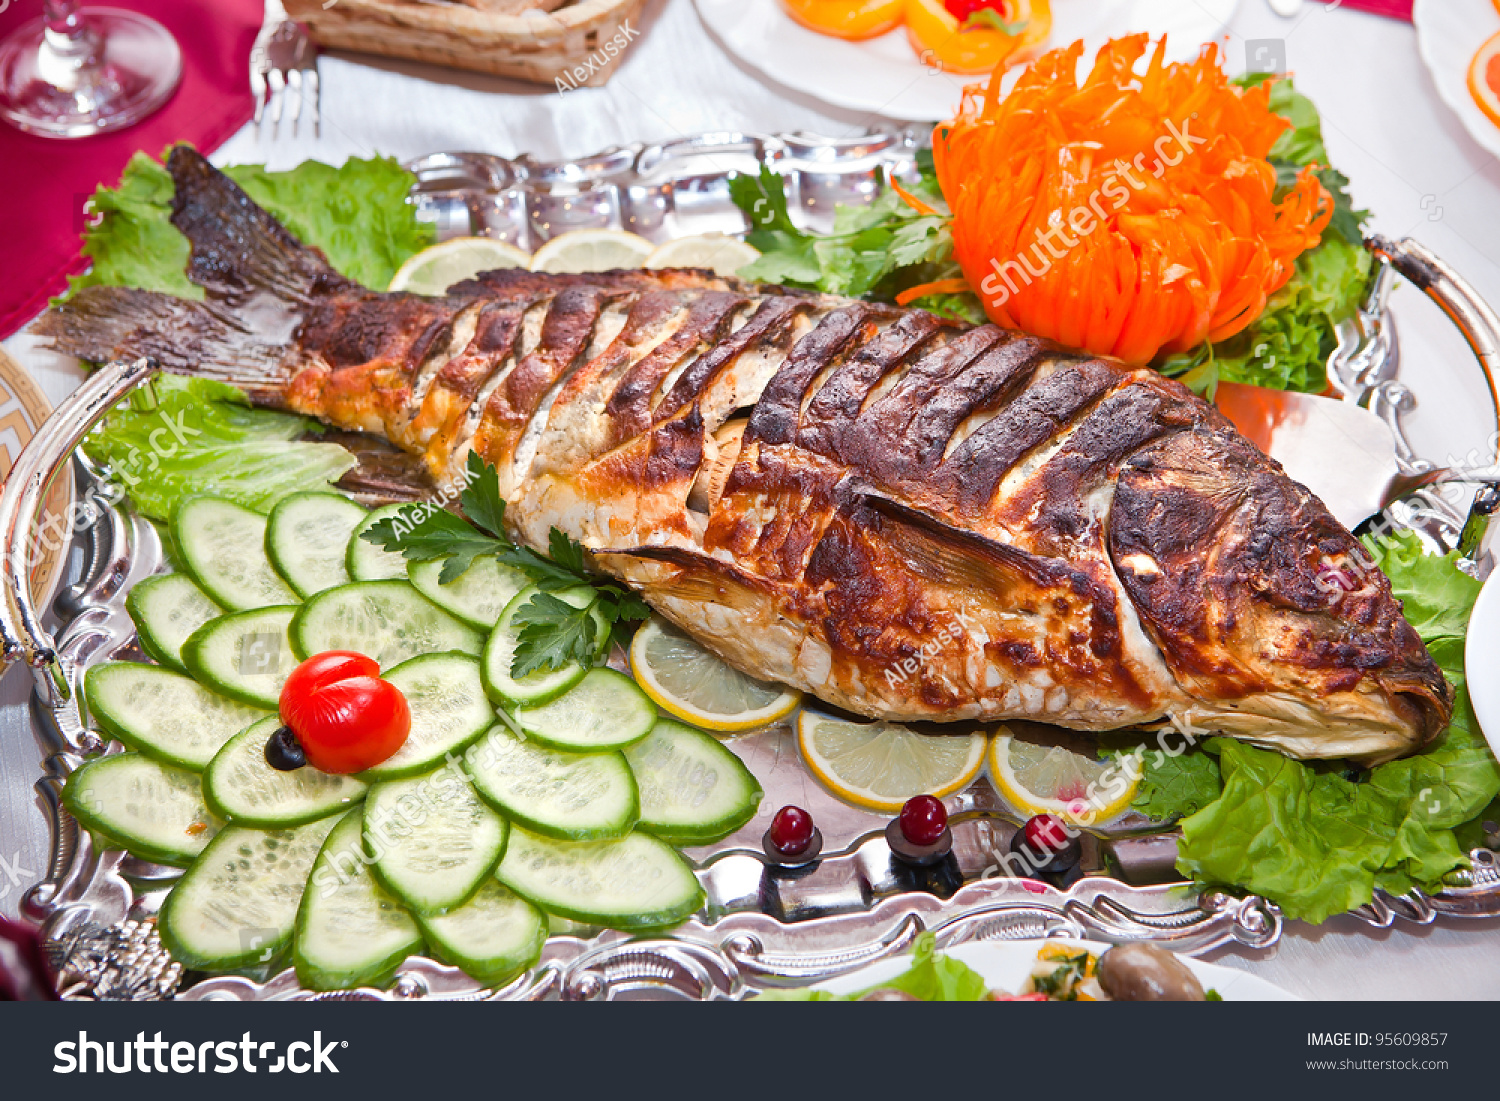 7 блюд из рыбы. Рыбные блюда. Блюда из рыбы. Красивые блюда из рыбы. Рыбные блюда на праздничный стол.